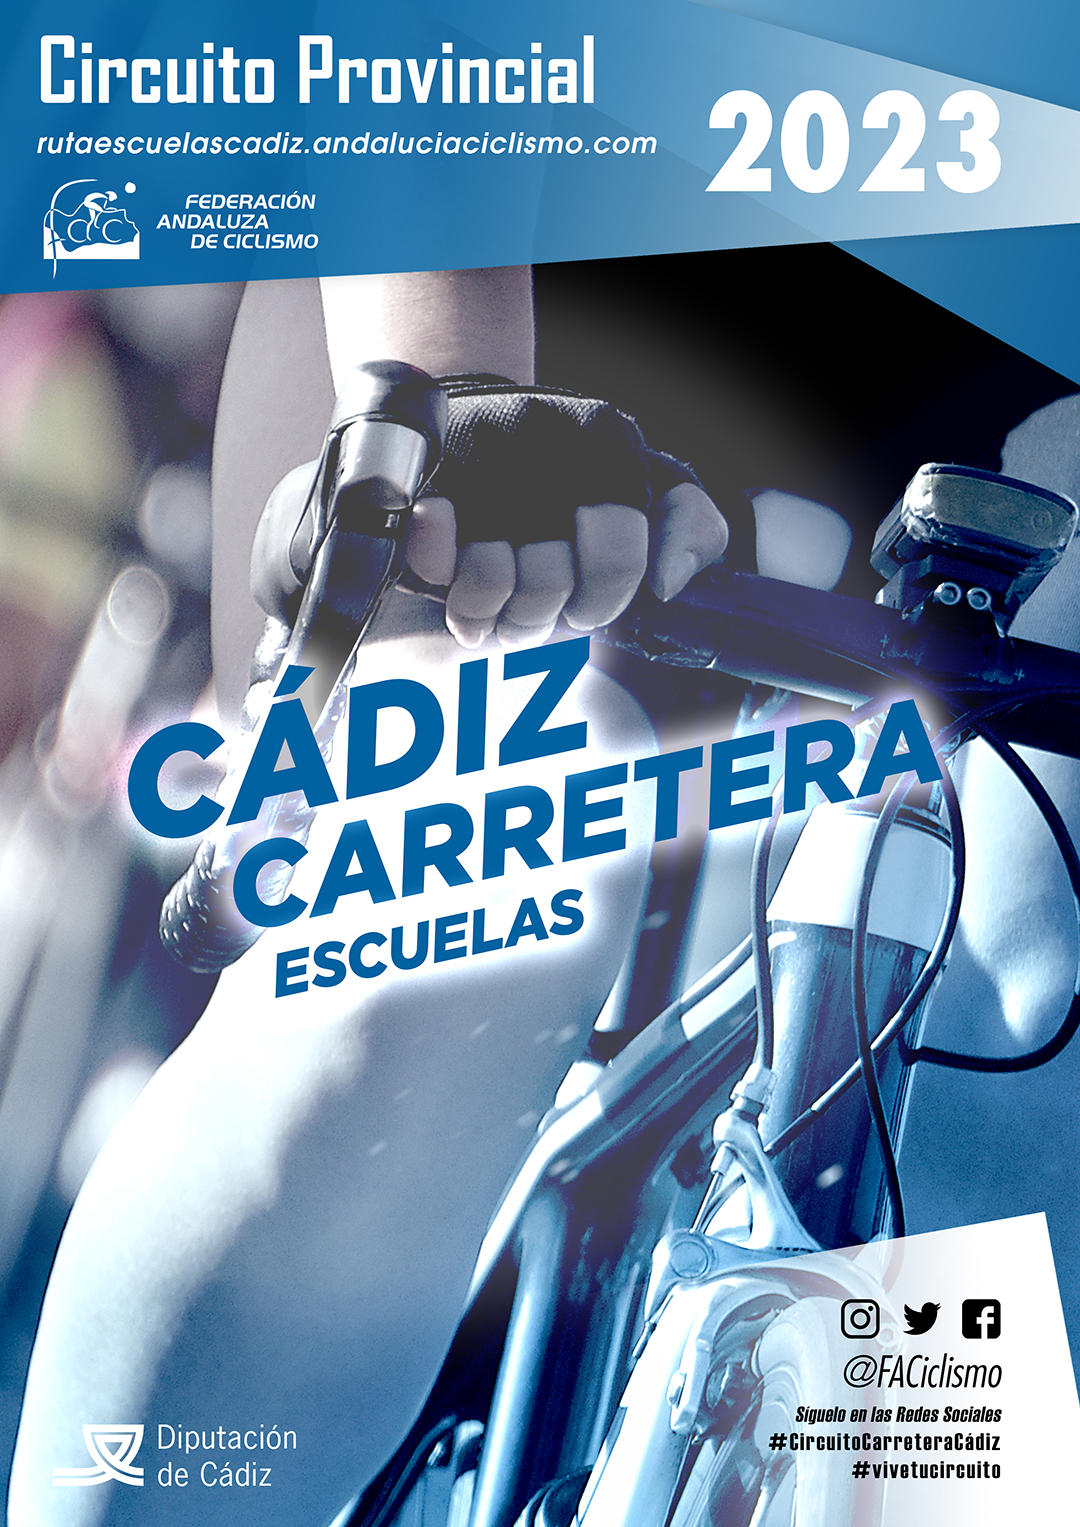 Circuito Provincial Cádiz CARRETERA ESCUELAS 2023